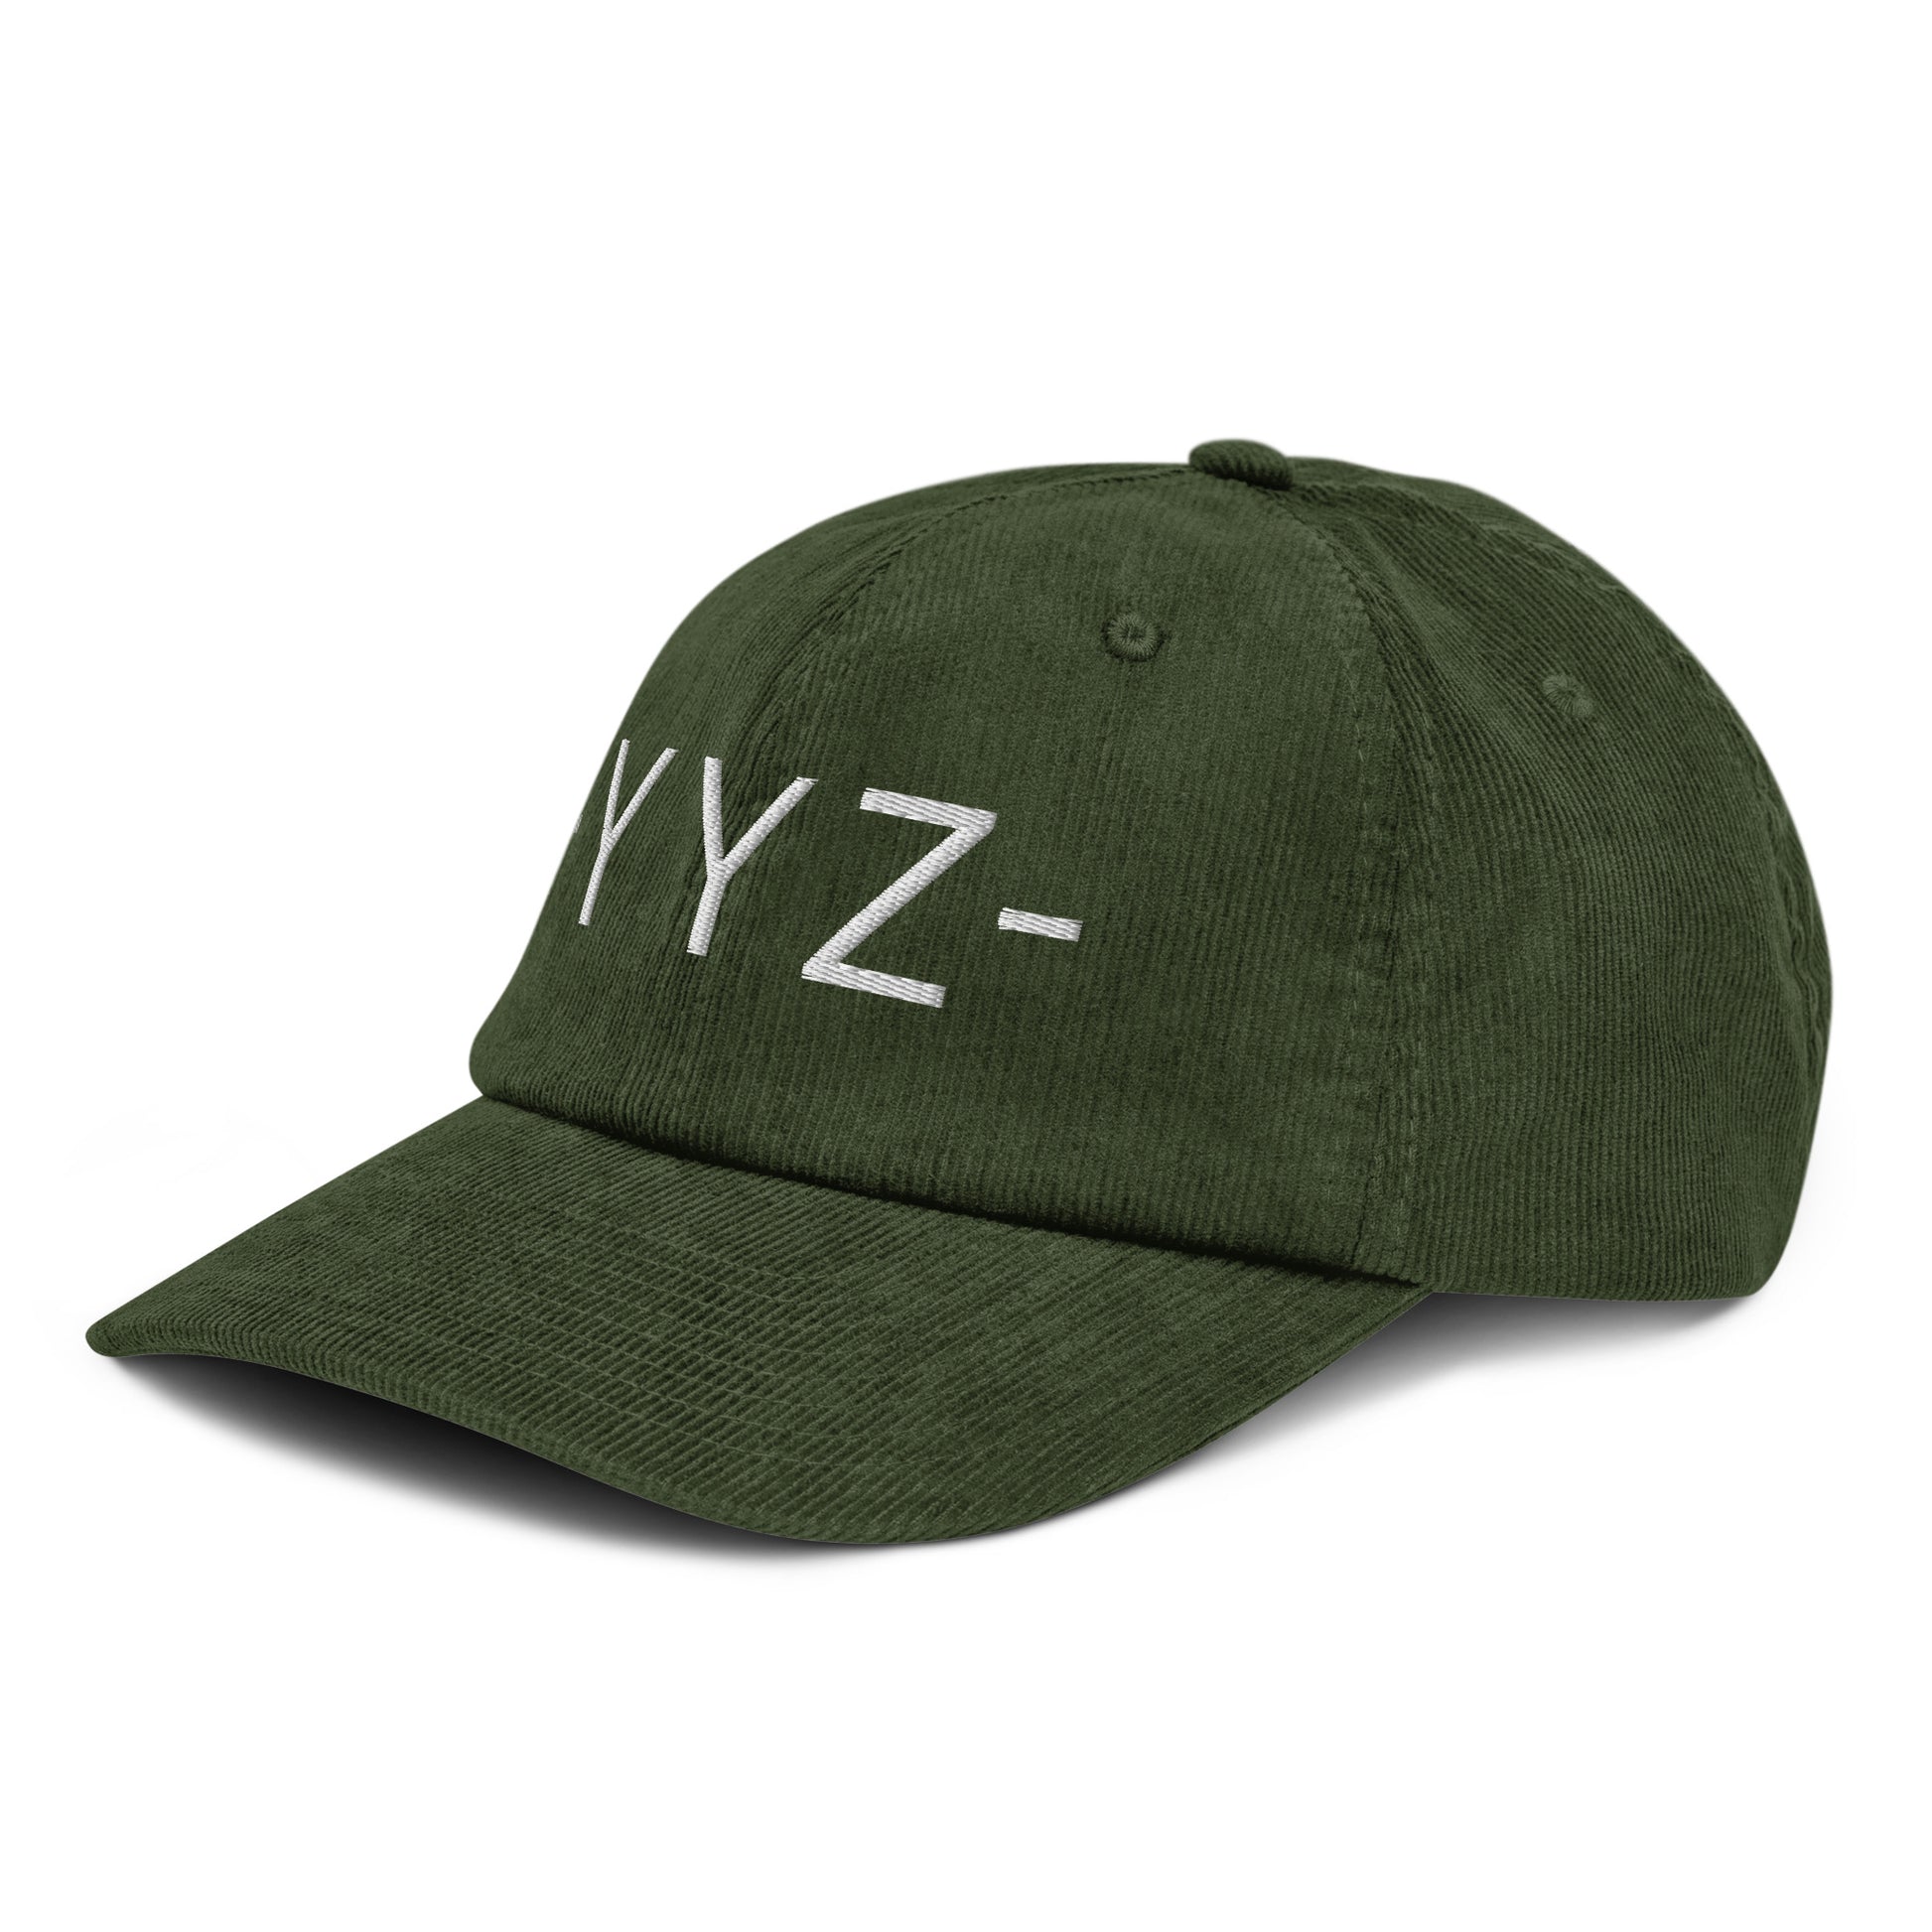 Souvenir Corduroy Hat - White • YYZ Toronto • YHM Designs - Image 17